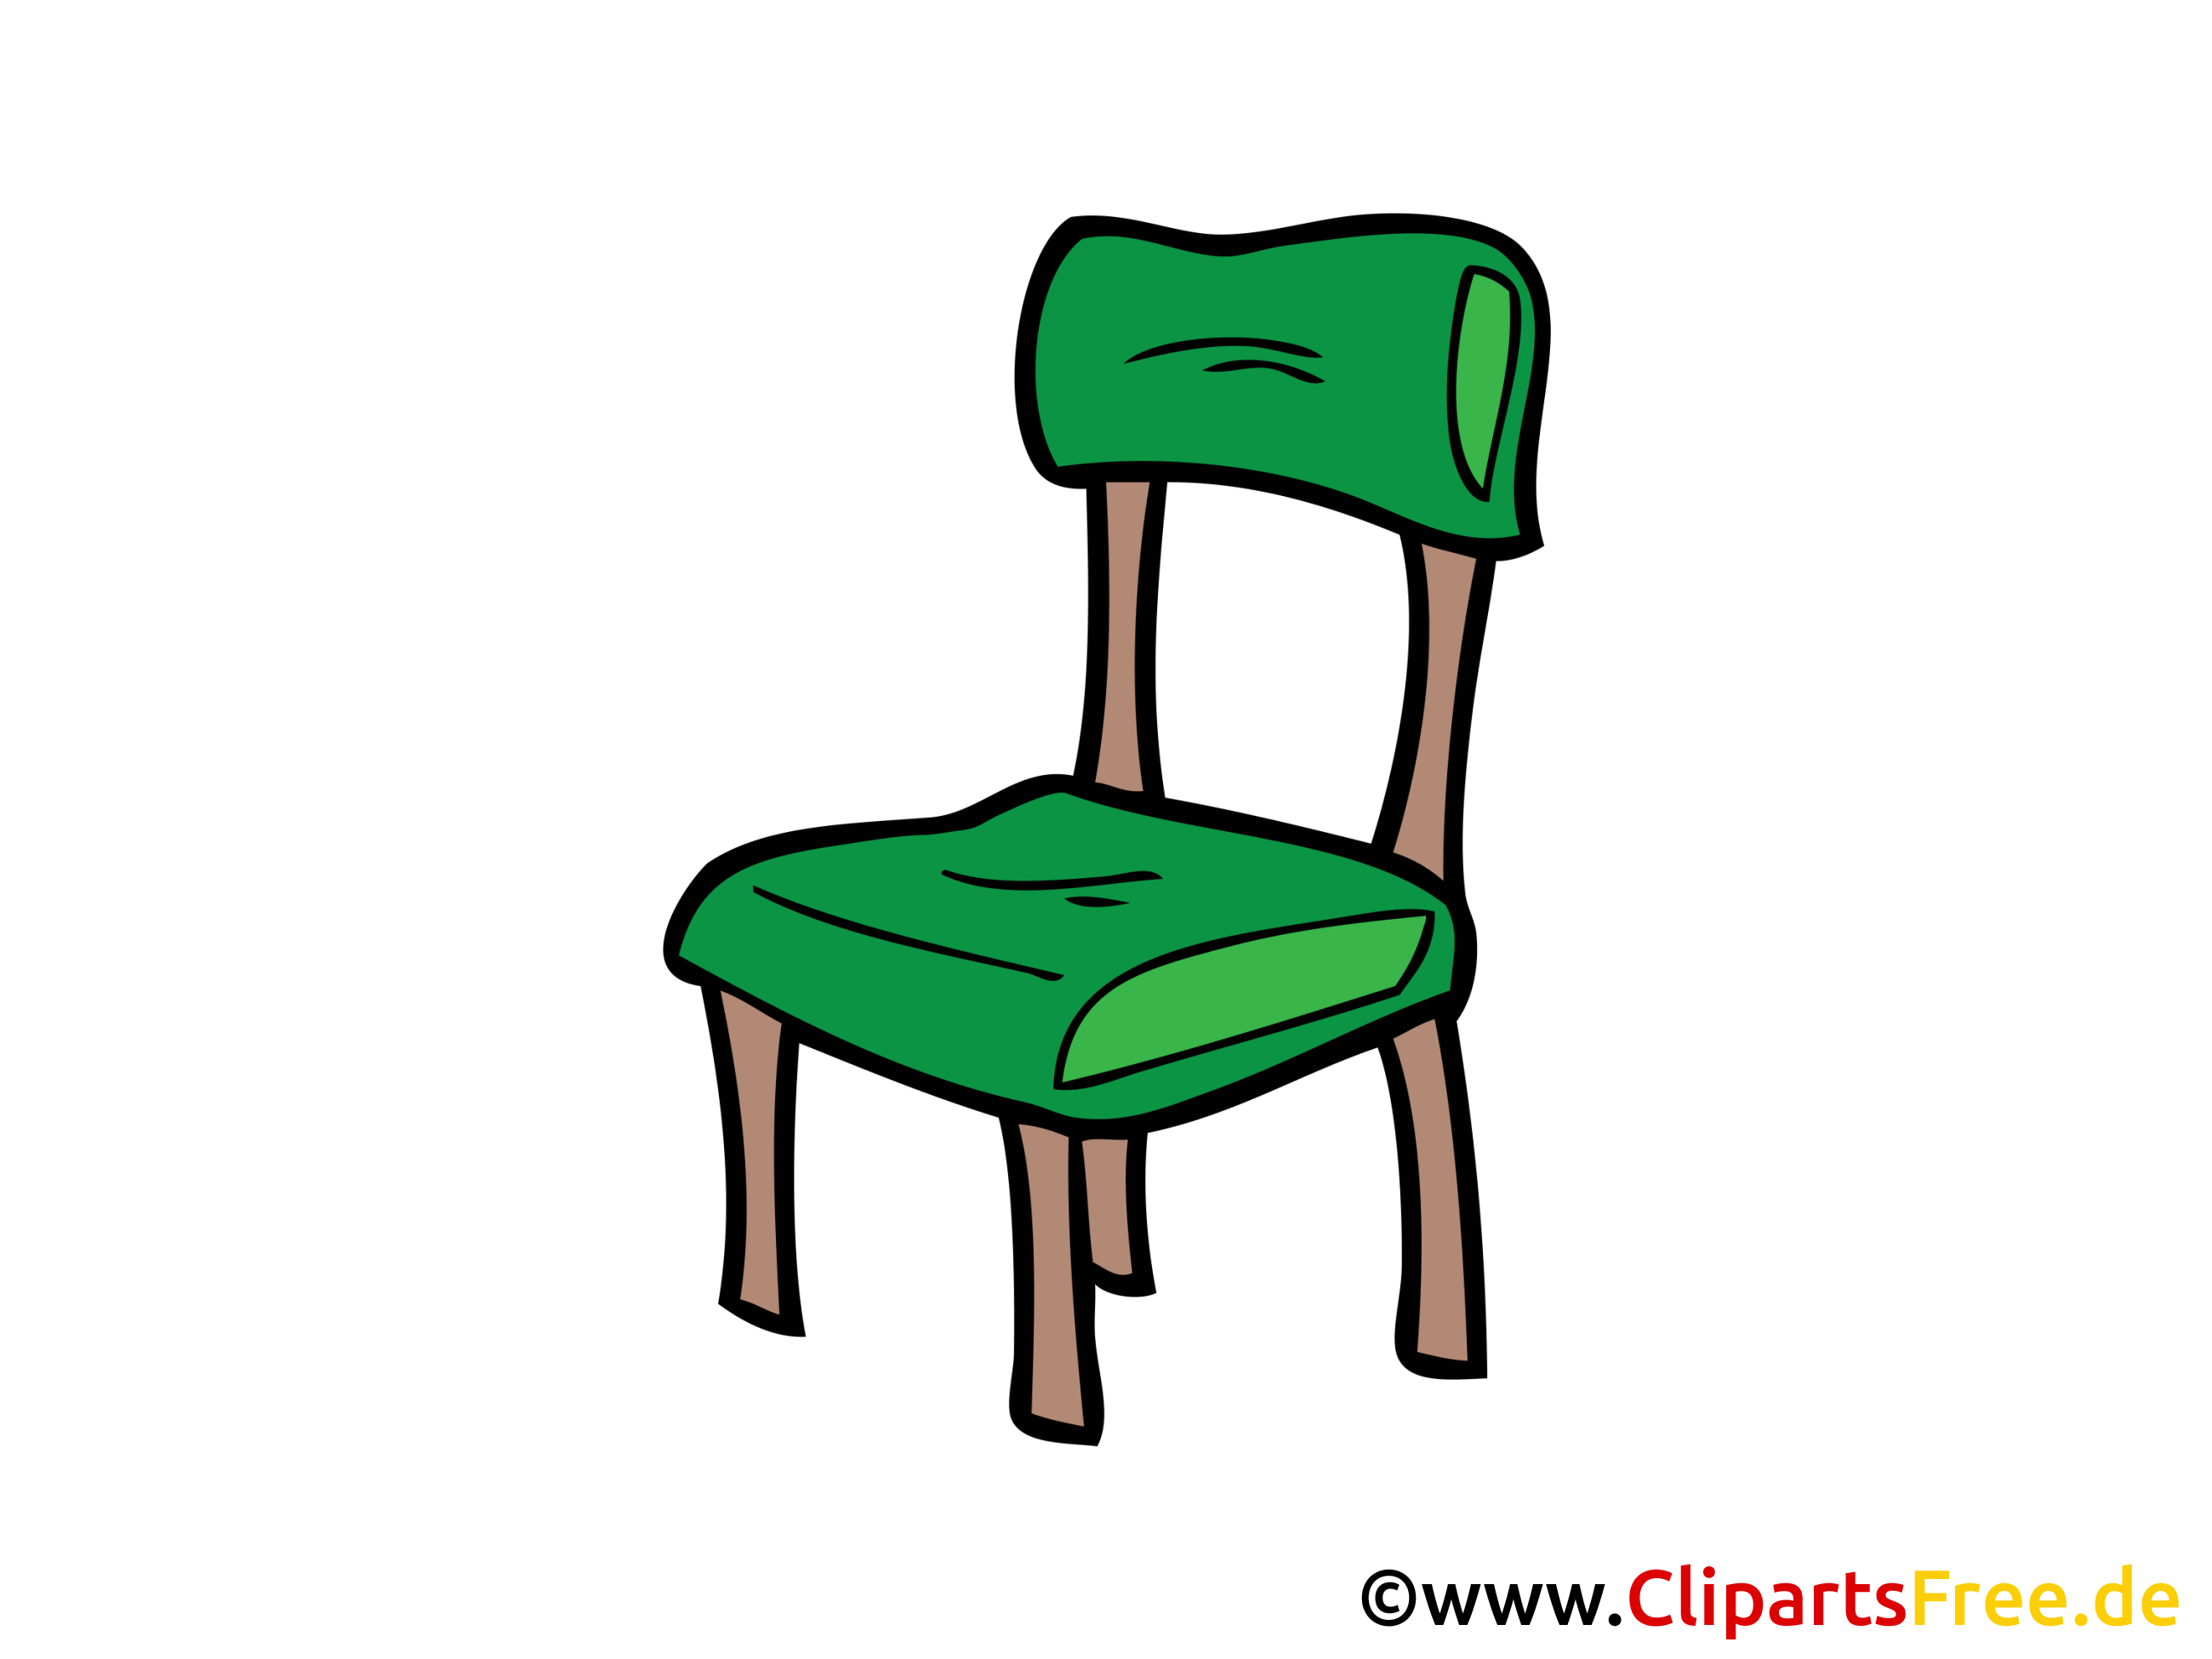 clipart gratuit chaise longue - photo #5